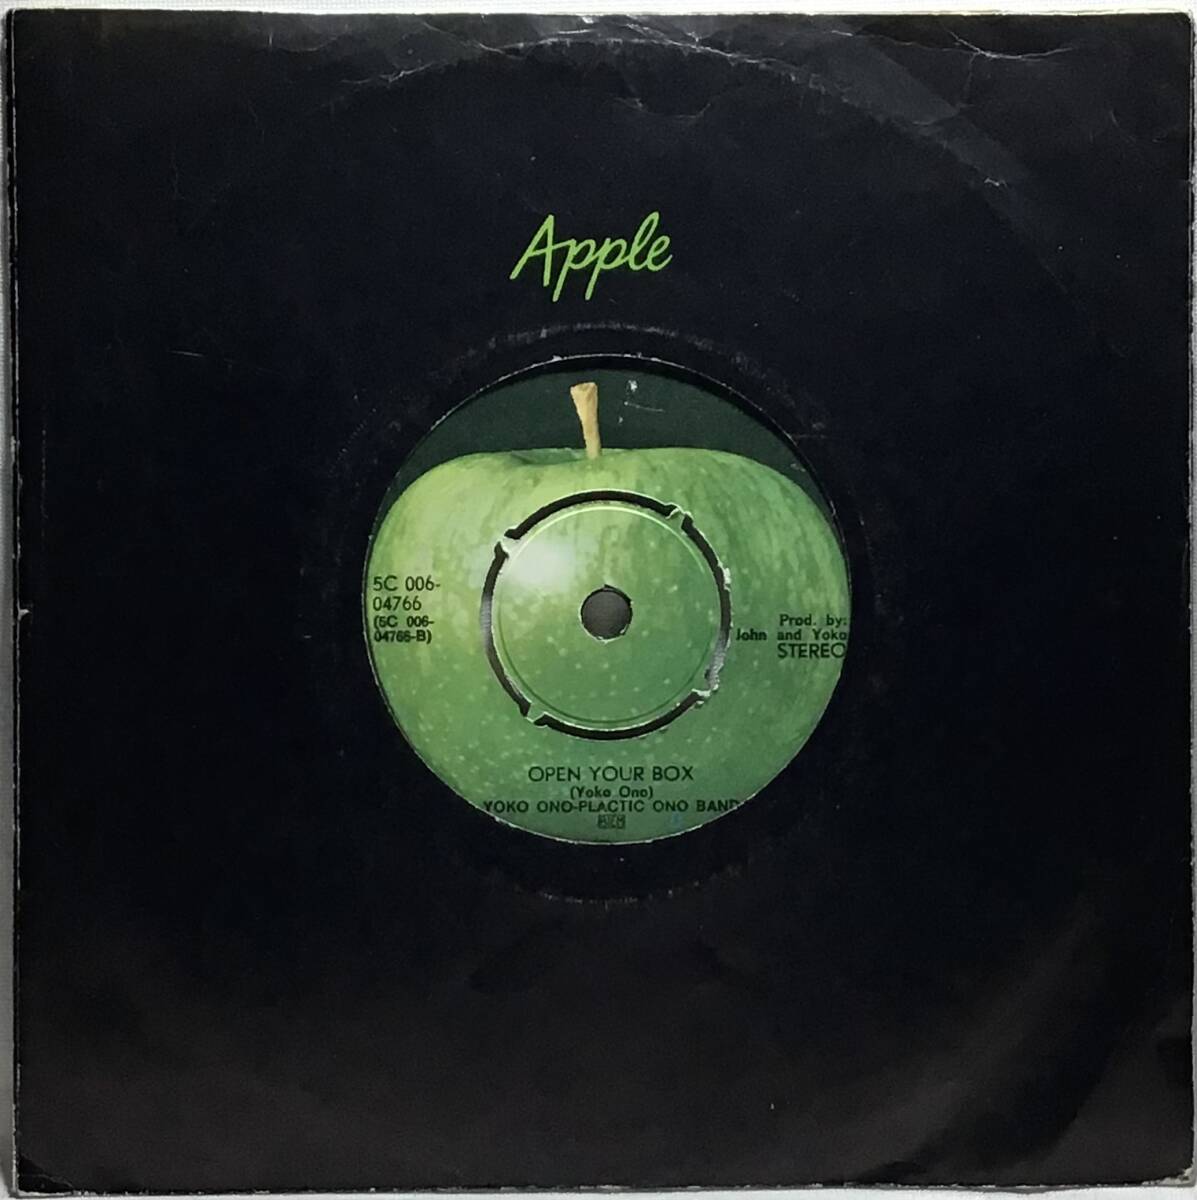 【蘭7】 JOHN LENNON - PLASTIC ONO BAND / POWER TO THE PEOPLE / OPEN YOUR BOX / 1971 オランダ盤 APPLE 7インチレコード EP 45 試聴済_画像2